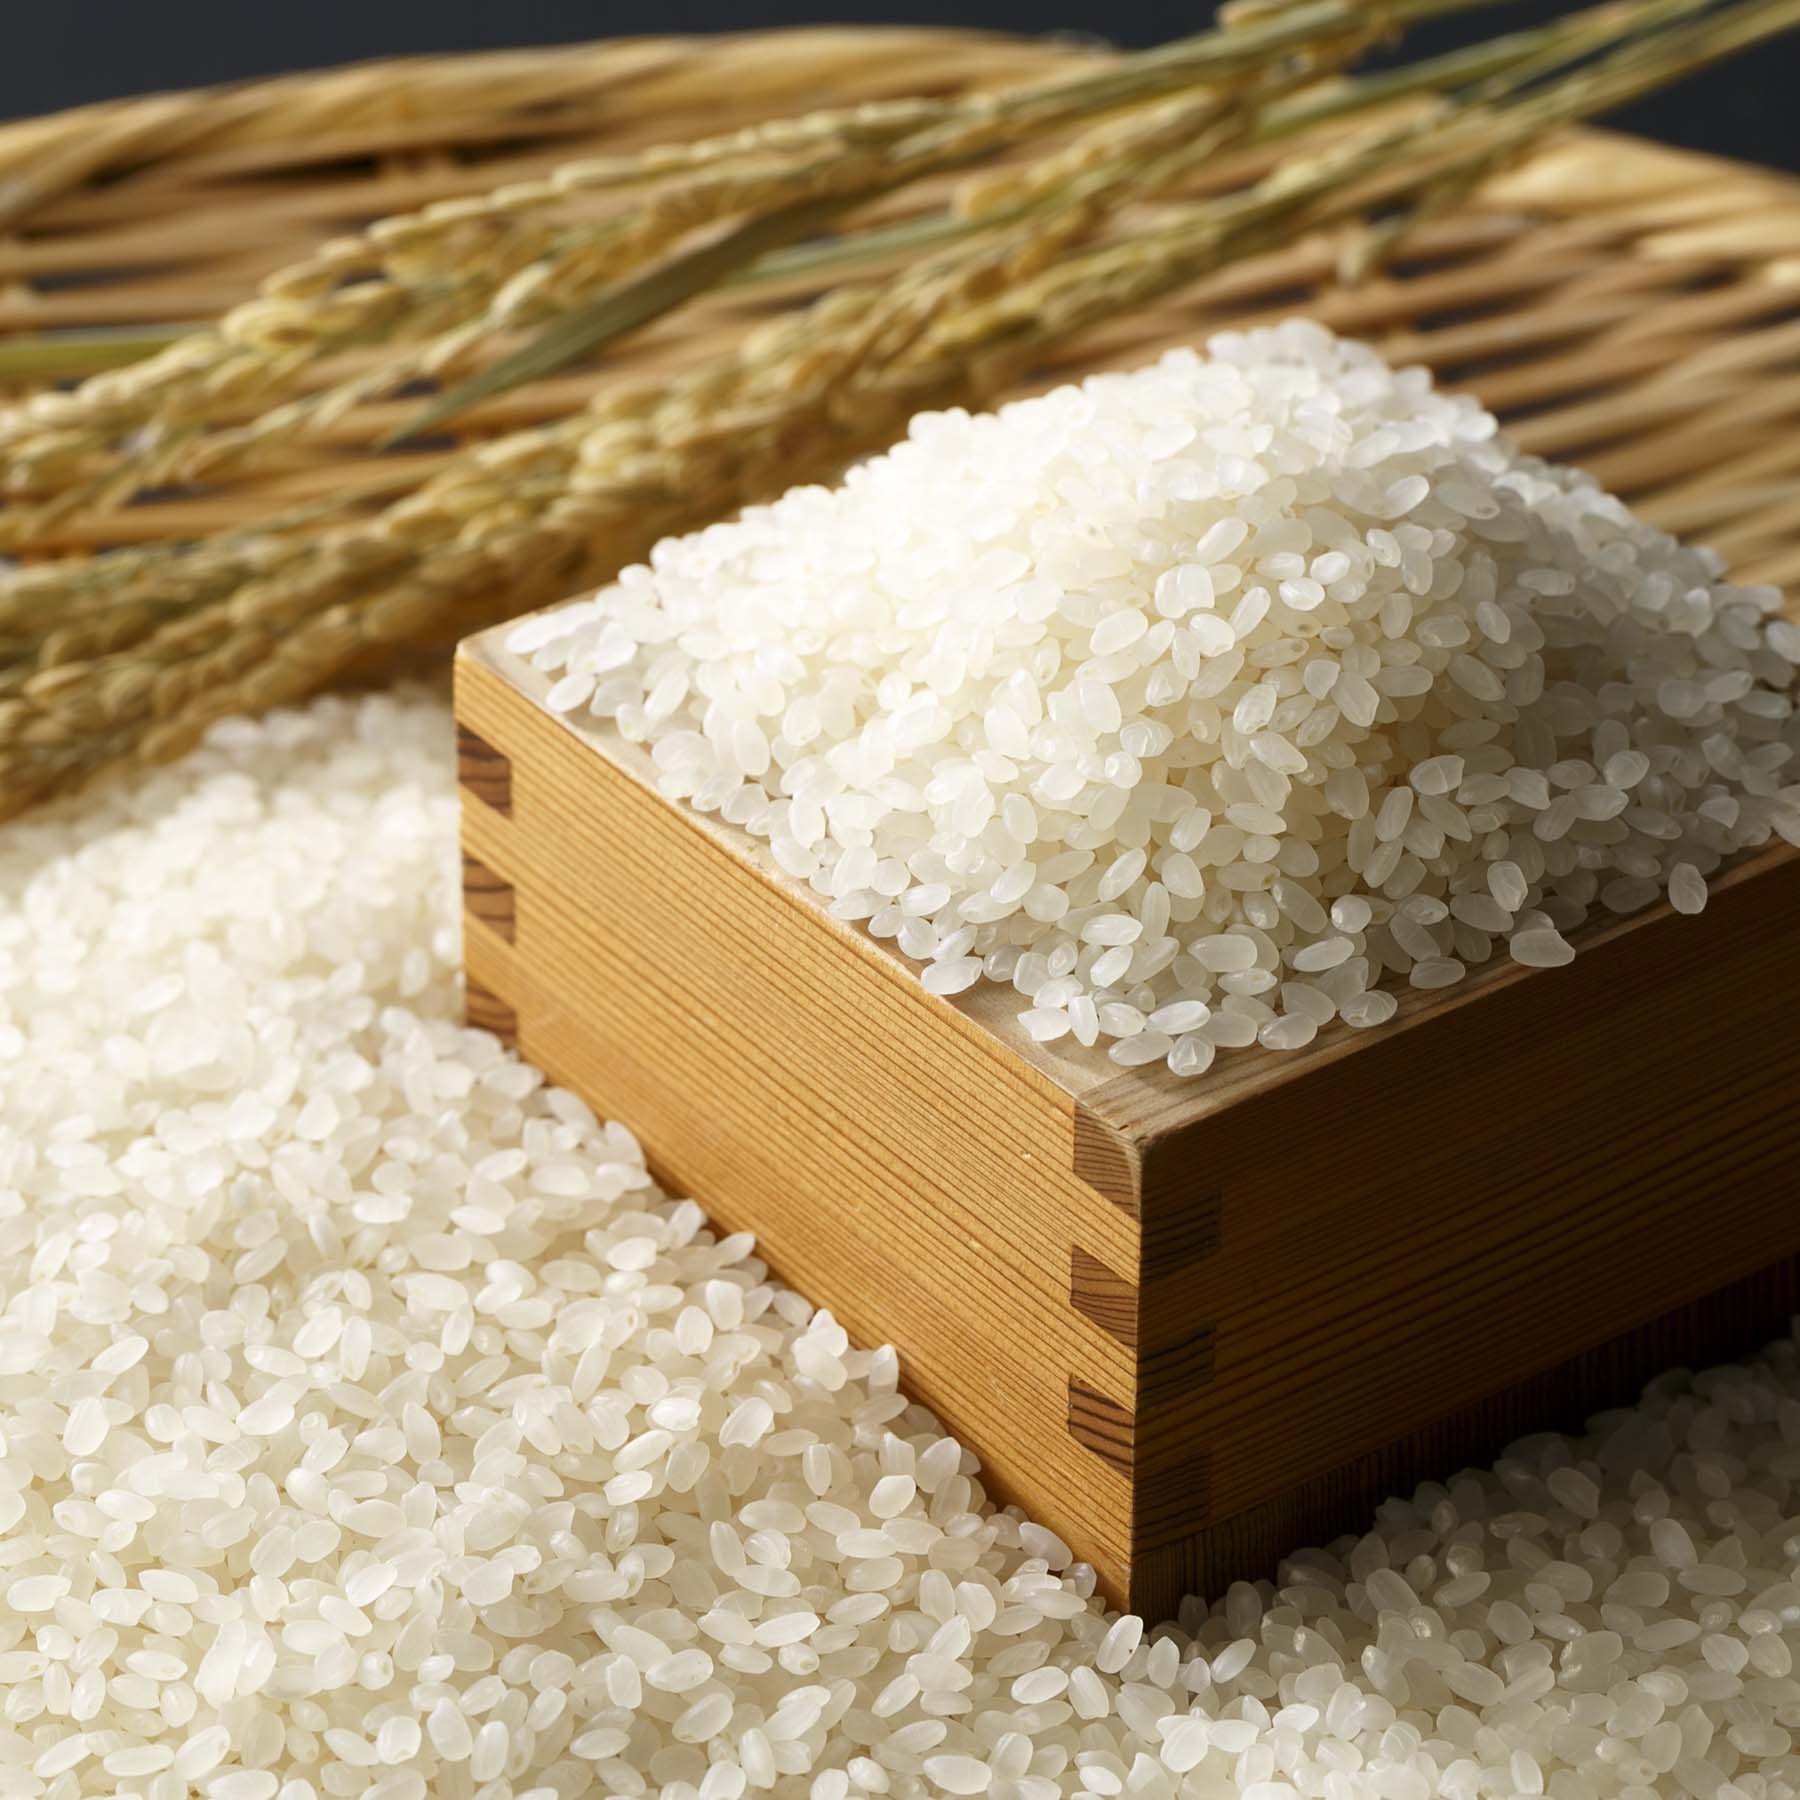 こだわり特別栽培米セットB 5kg×2袋 定期便6回